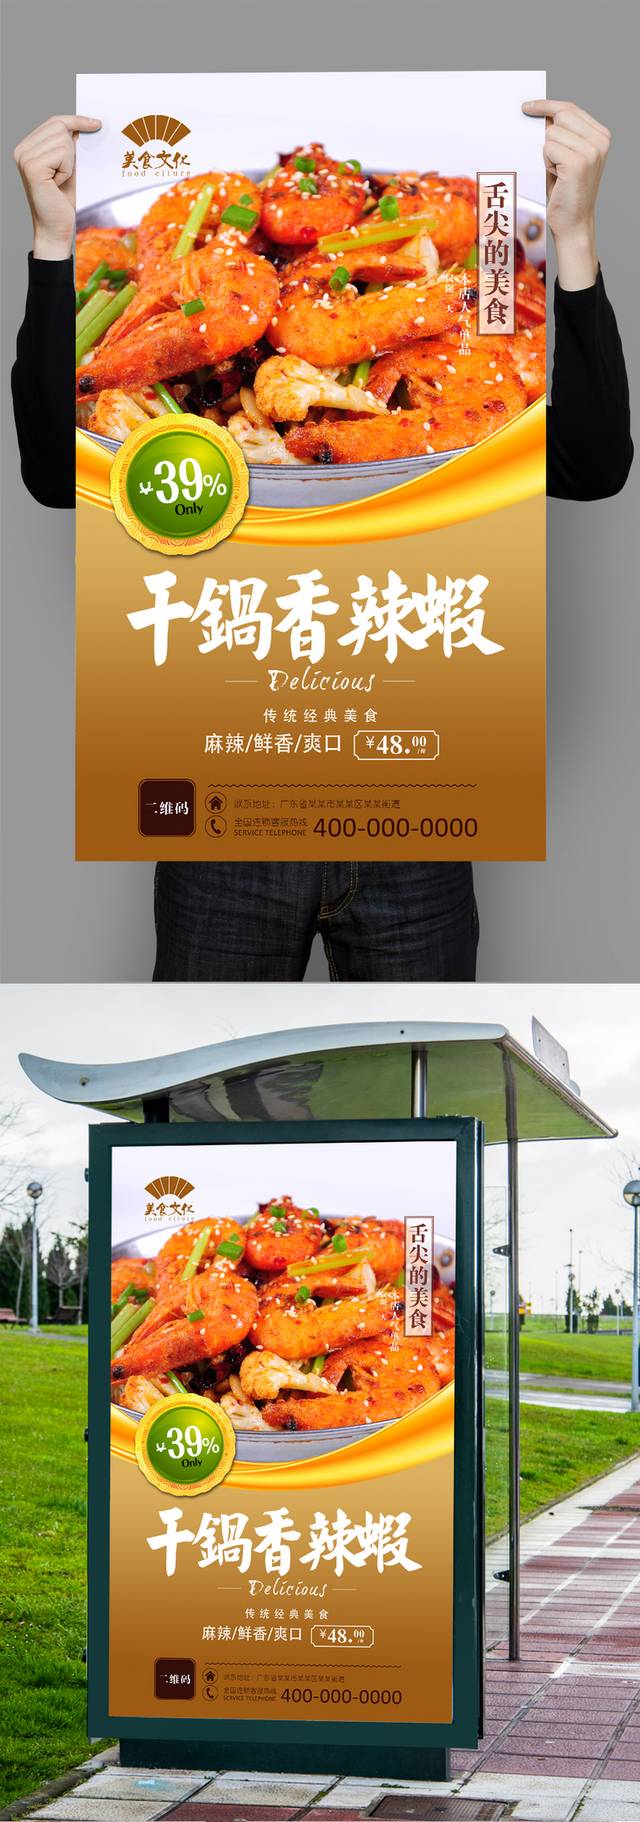 经典干锅香辣虾宣传海报设计psd